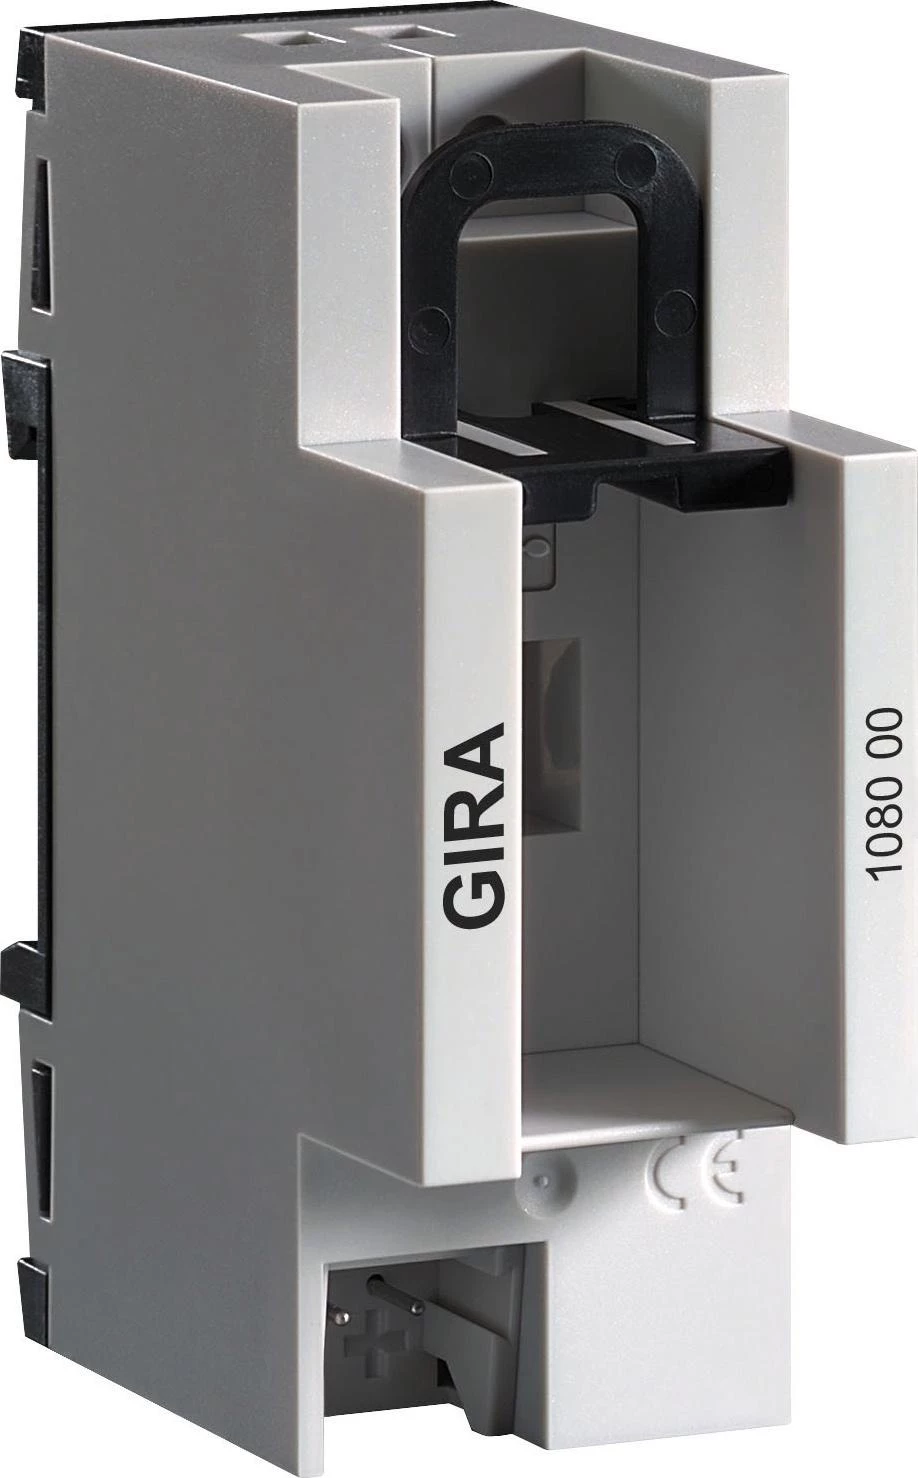  артикул 108000 название Gira Instabus Интерфейс передачи данных USB